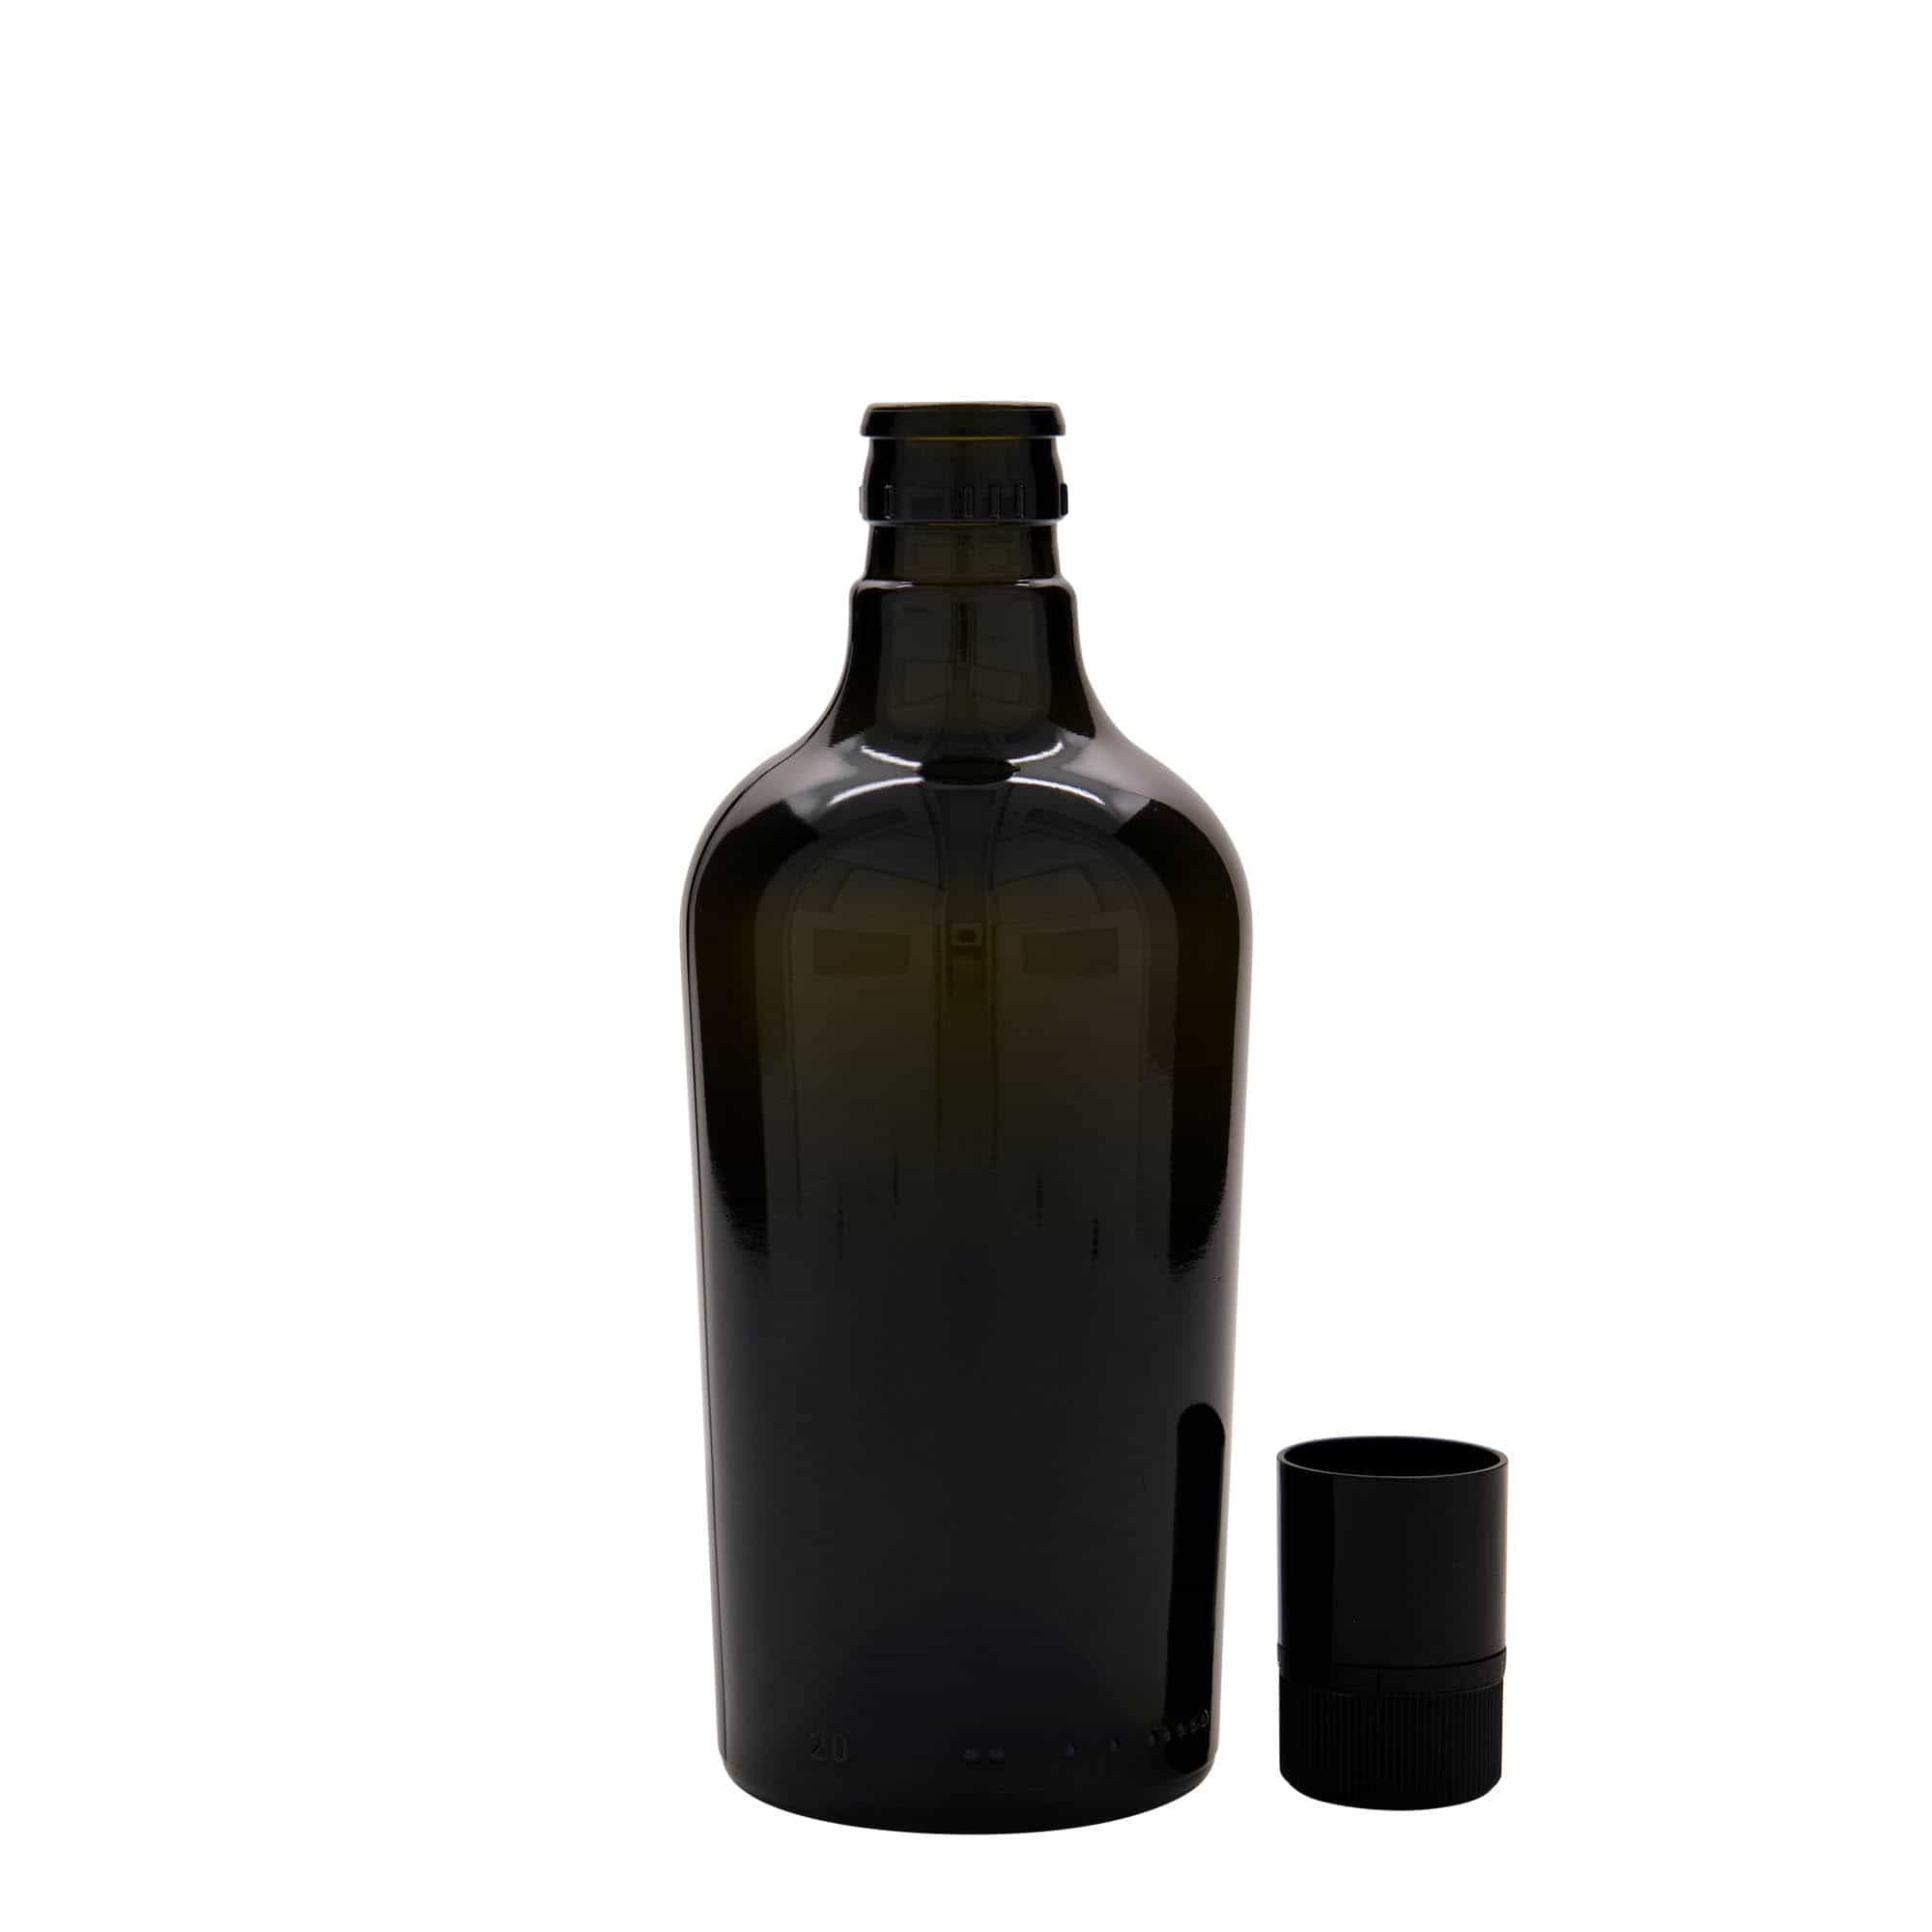 500 ml butelka na ocet/olej 'Oleum', szkło, kolor zielony antyczny, zamknięcie: DOP